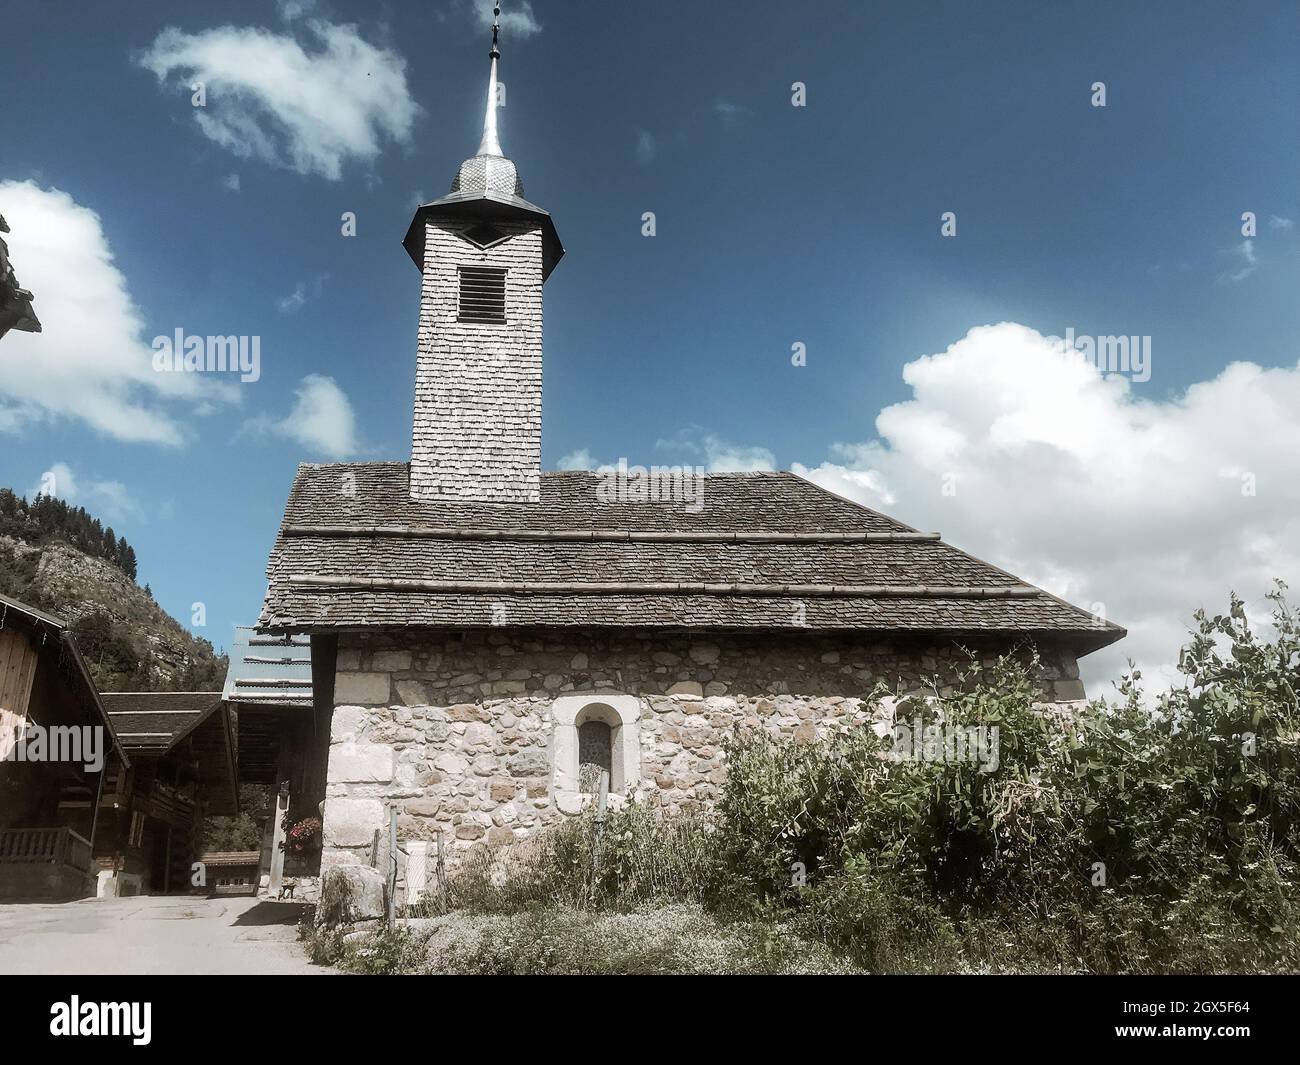 Église traditionnelle du village de Chinaillon, le Grand-Bornand, France Banque D'Images